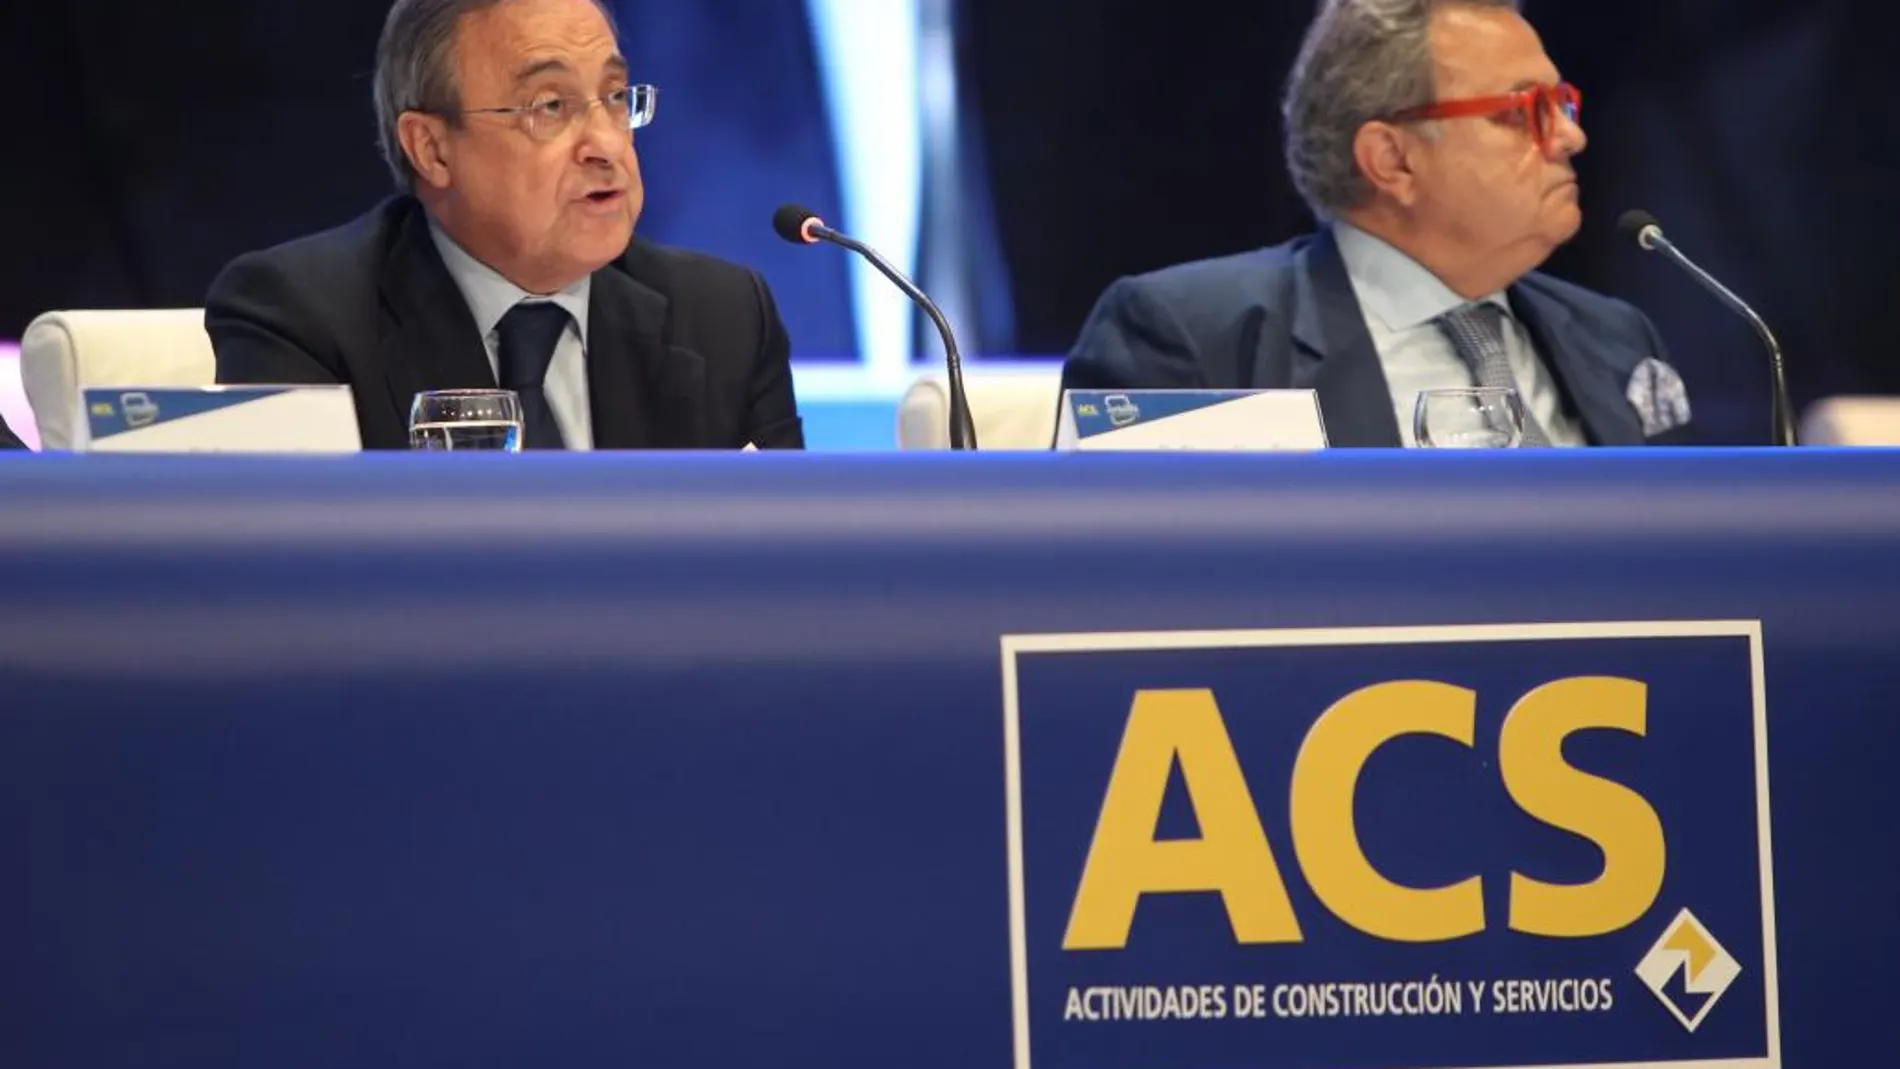 El presidente de ACS, Florentino Pérez.